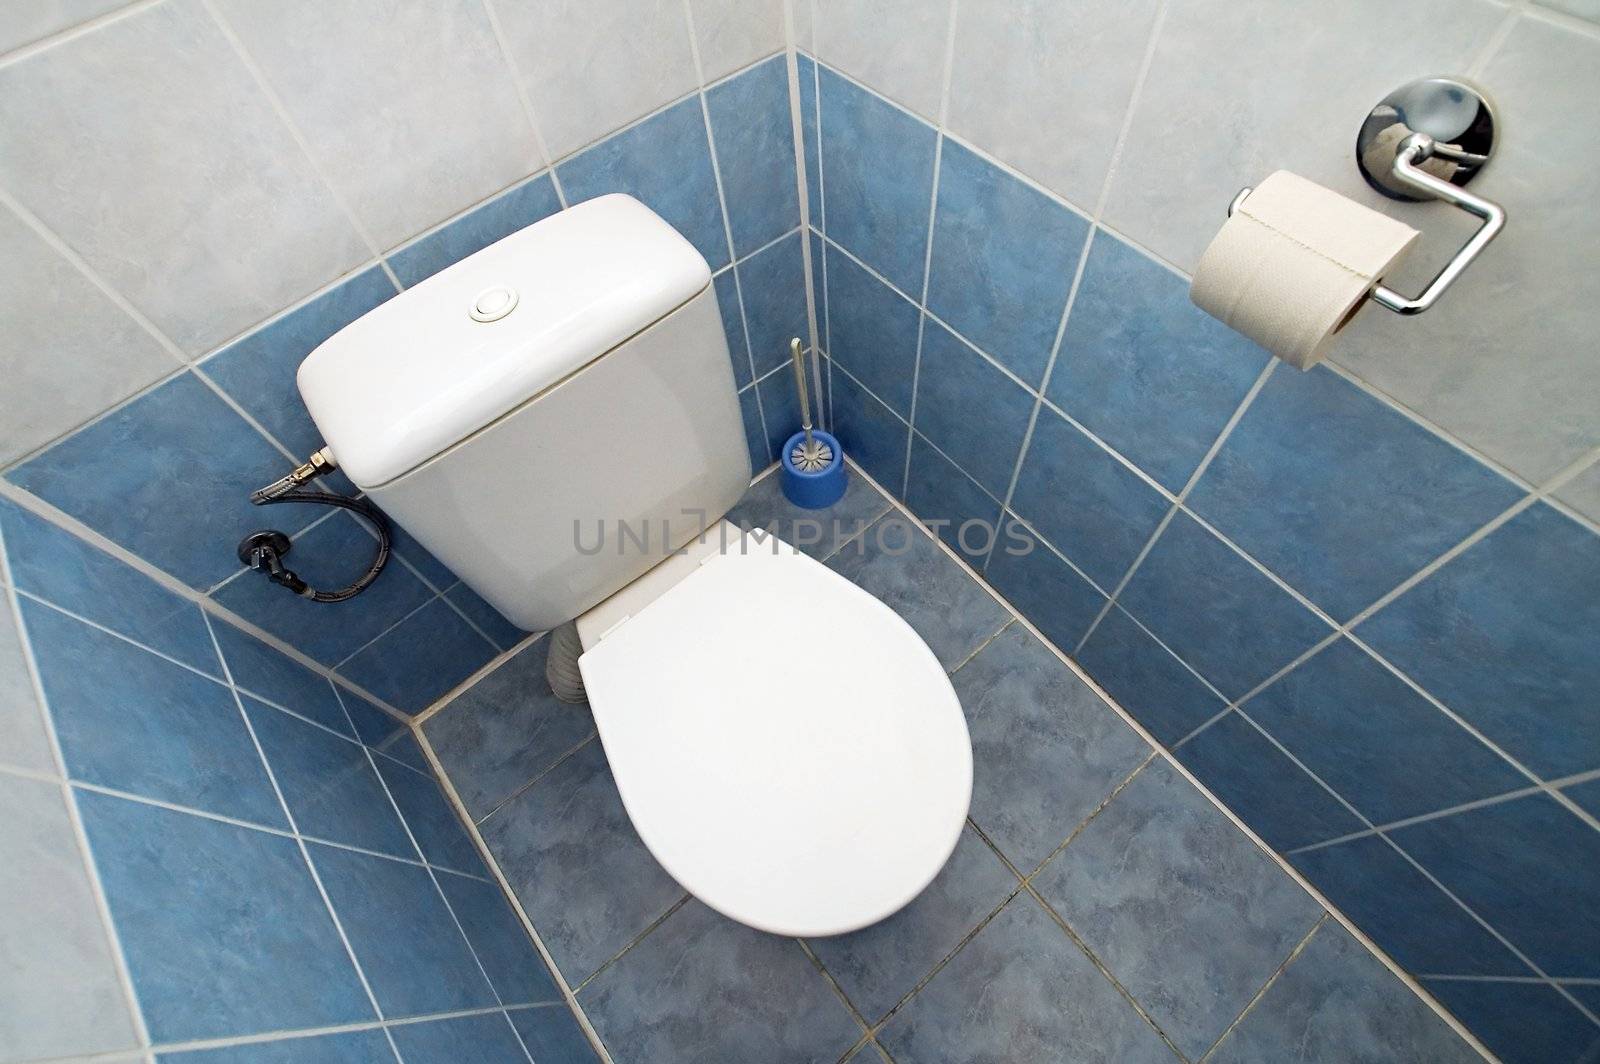 white clean toilet, white and blue tiles